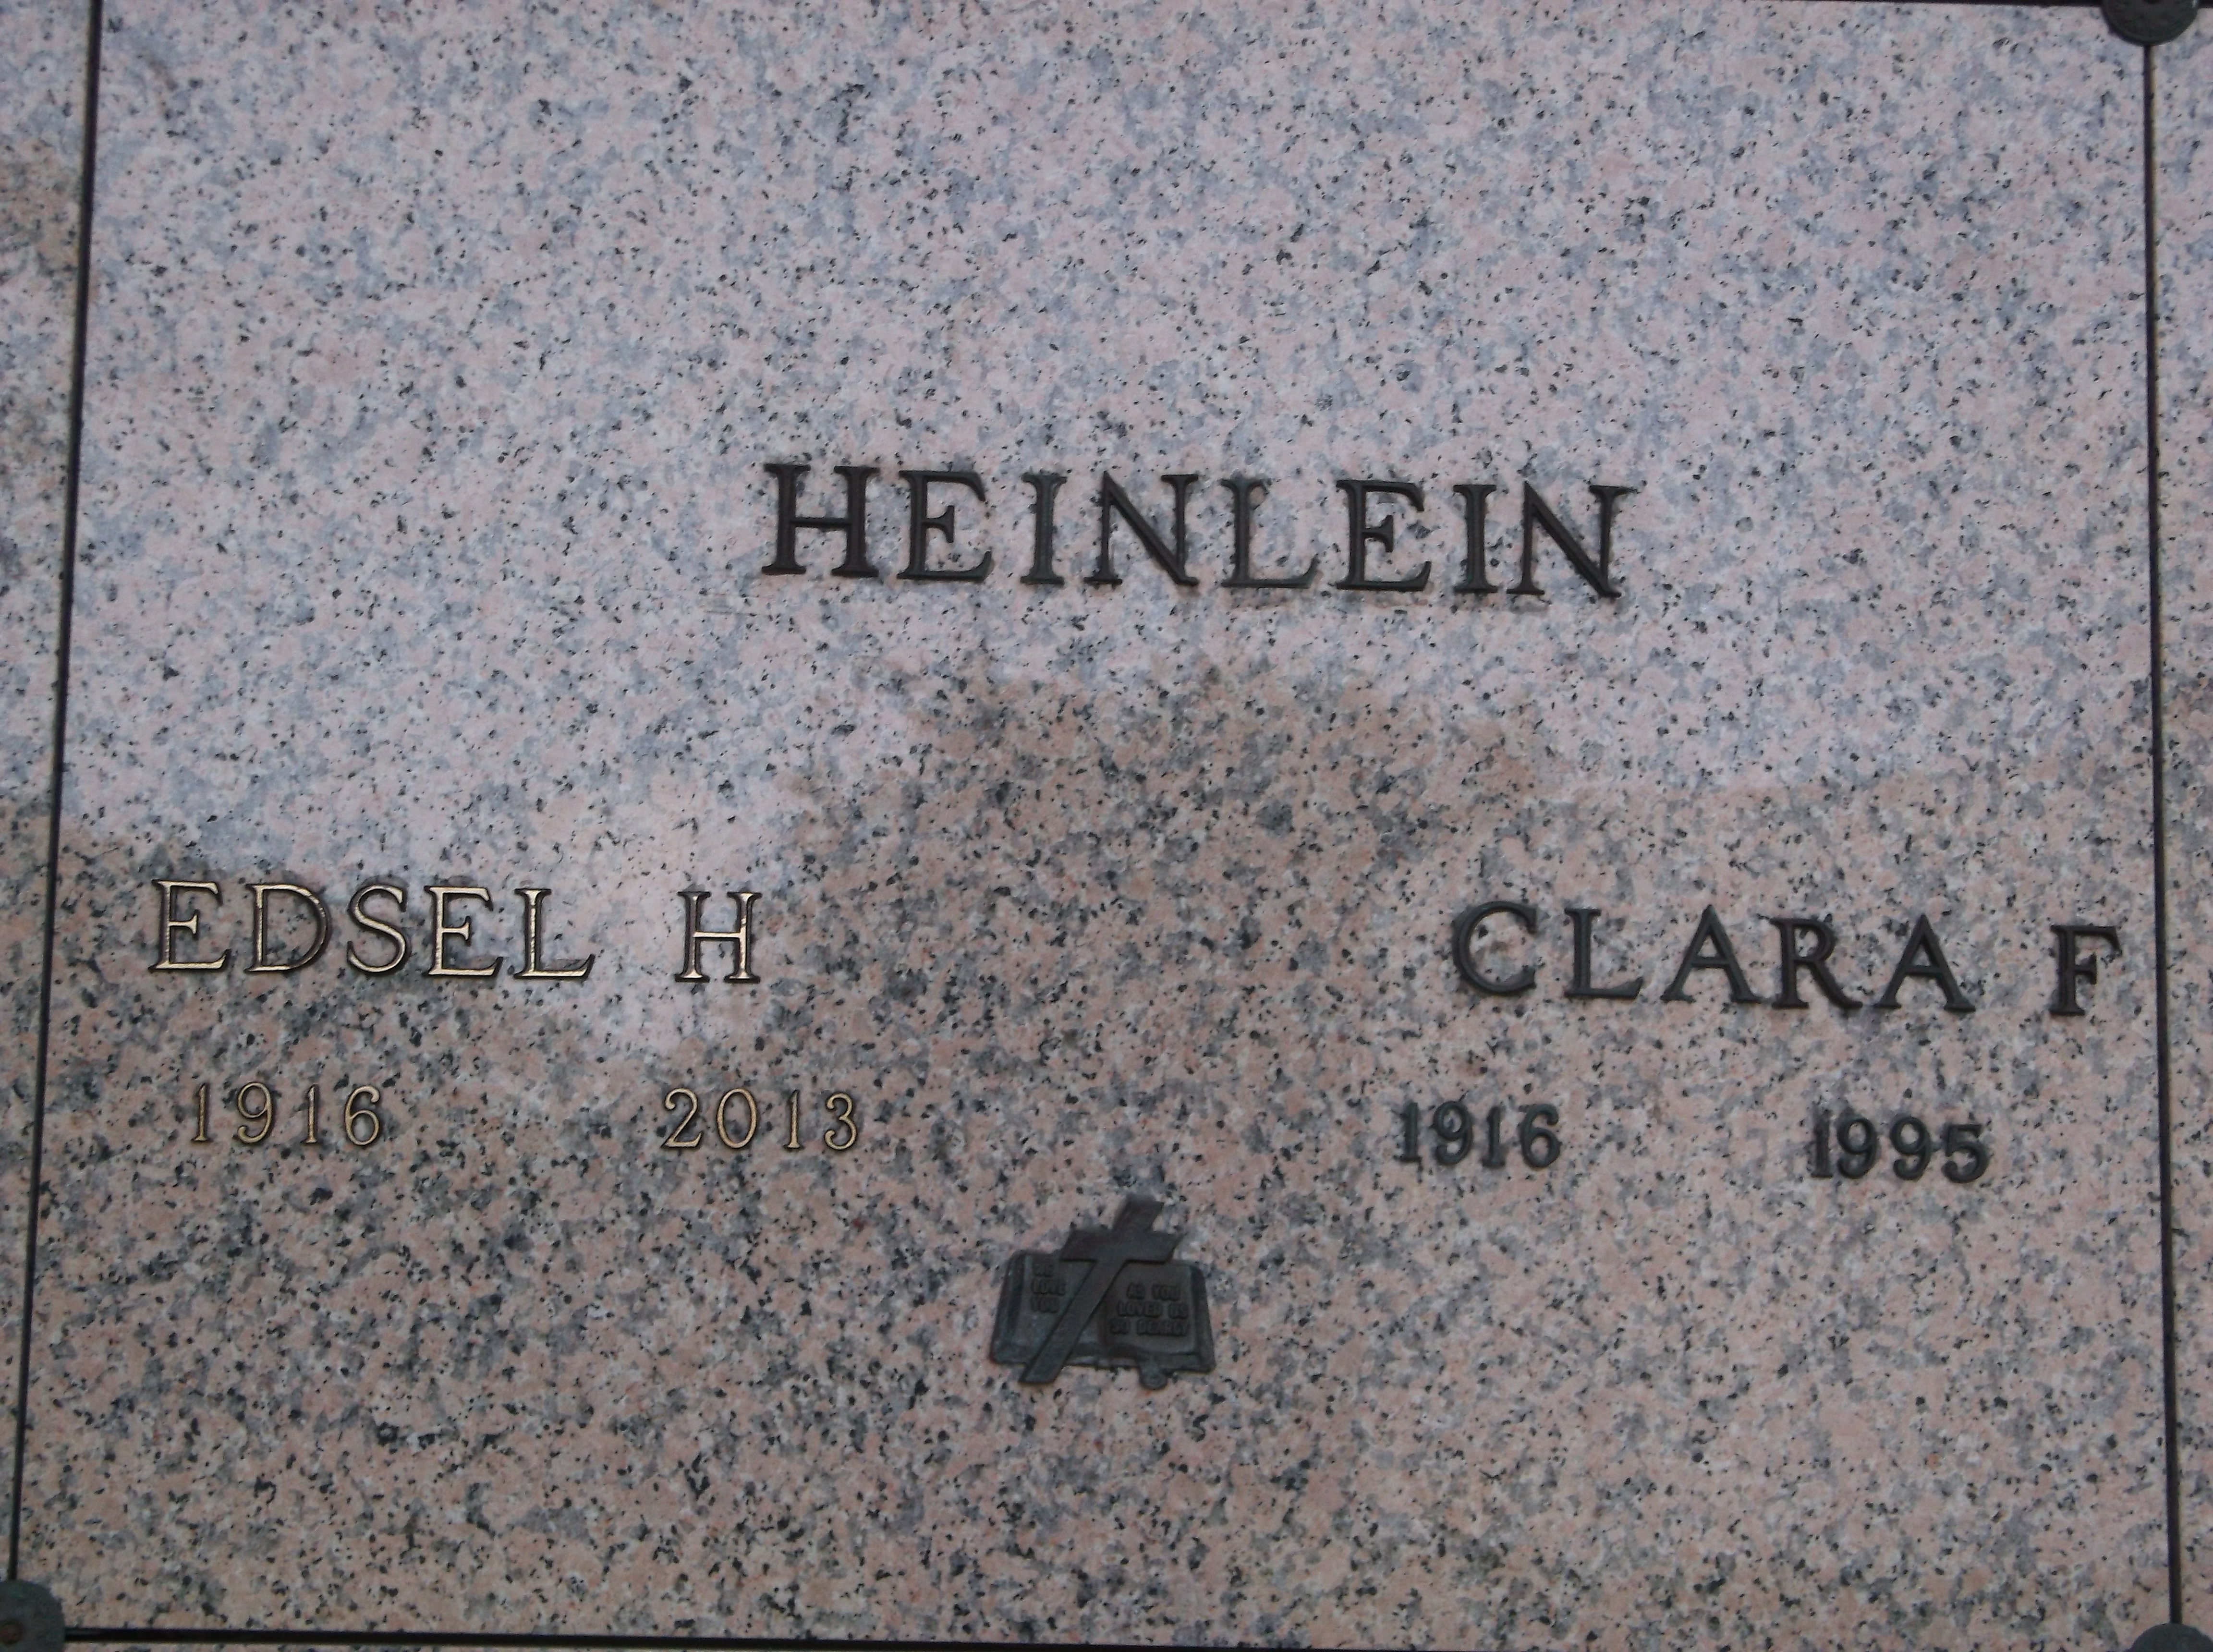 Clara F Heinlein